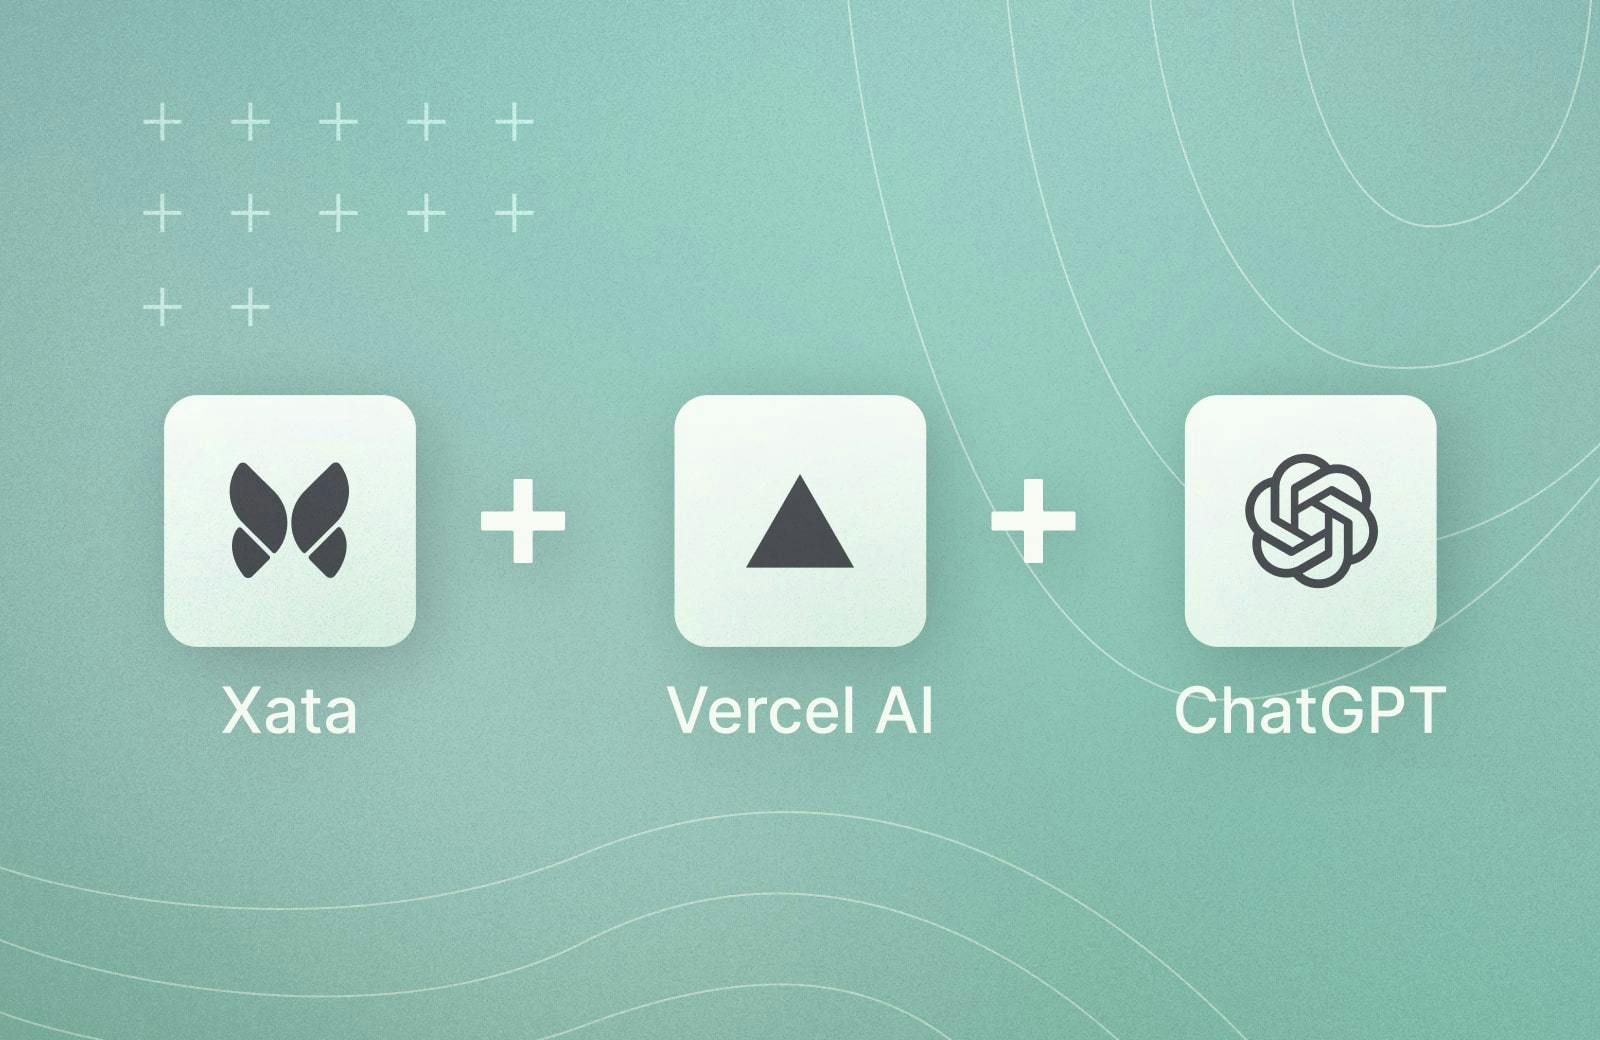 Xata, Vercel and ChatGPT logos